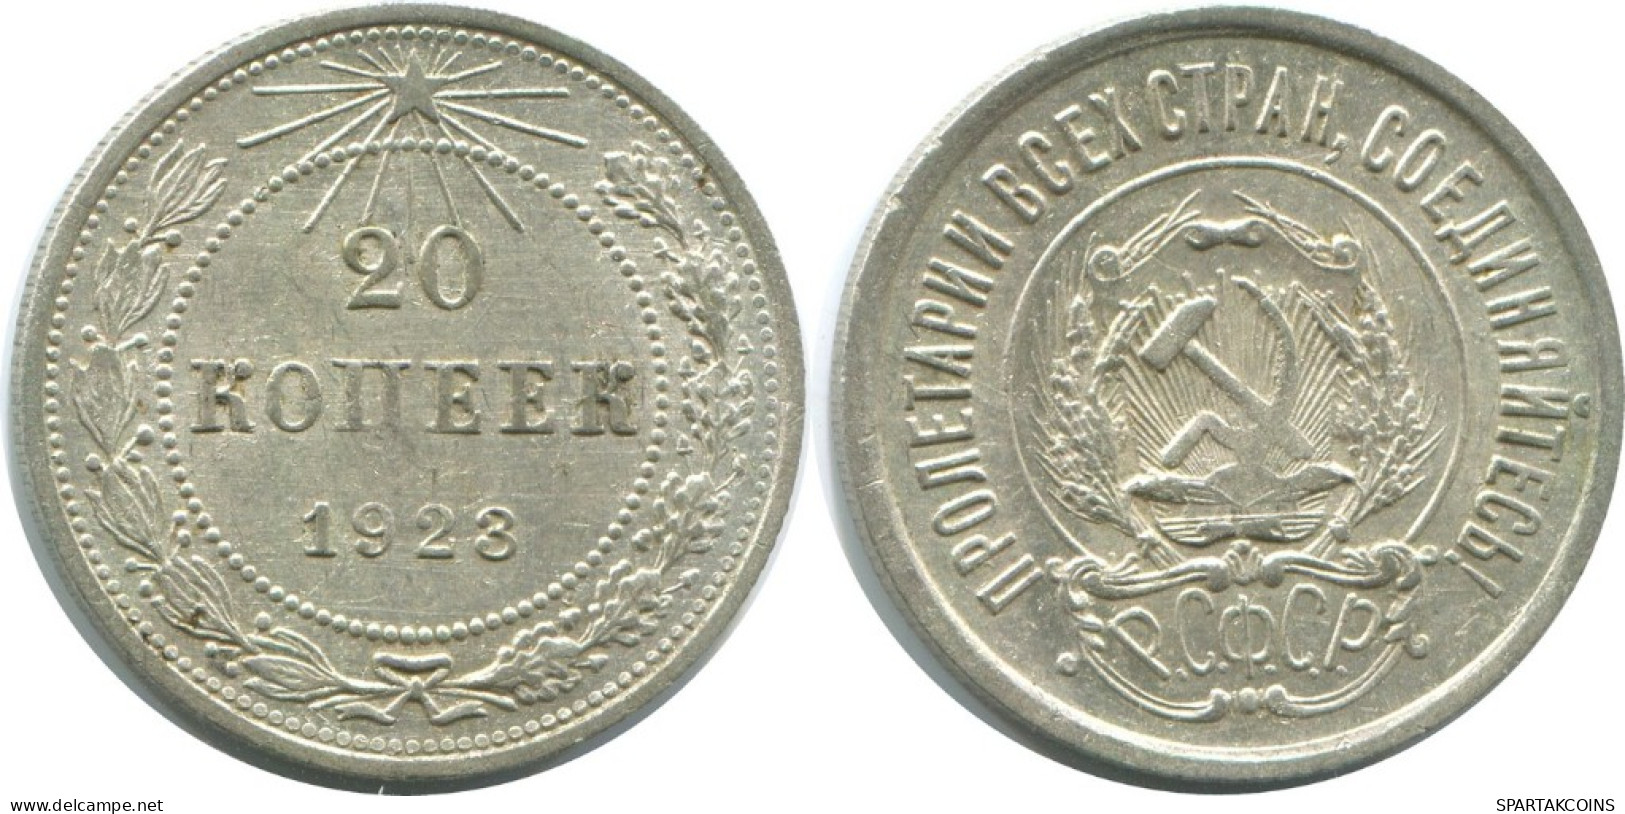 20 KOPEKS 1923 RUSSIA RSFSR SILVER Coin HIGH GRADE #AF518.4.U.A - Rusland